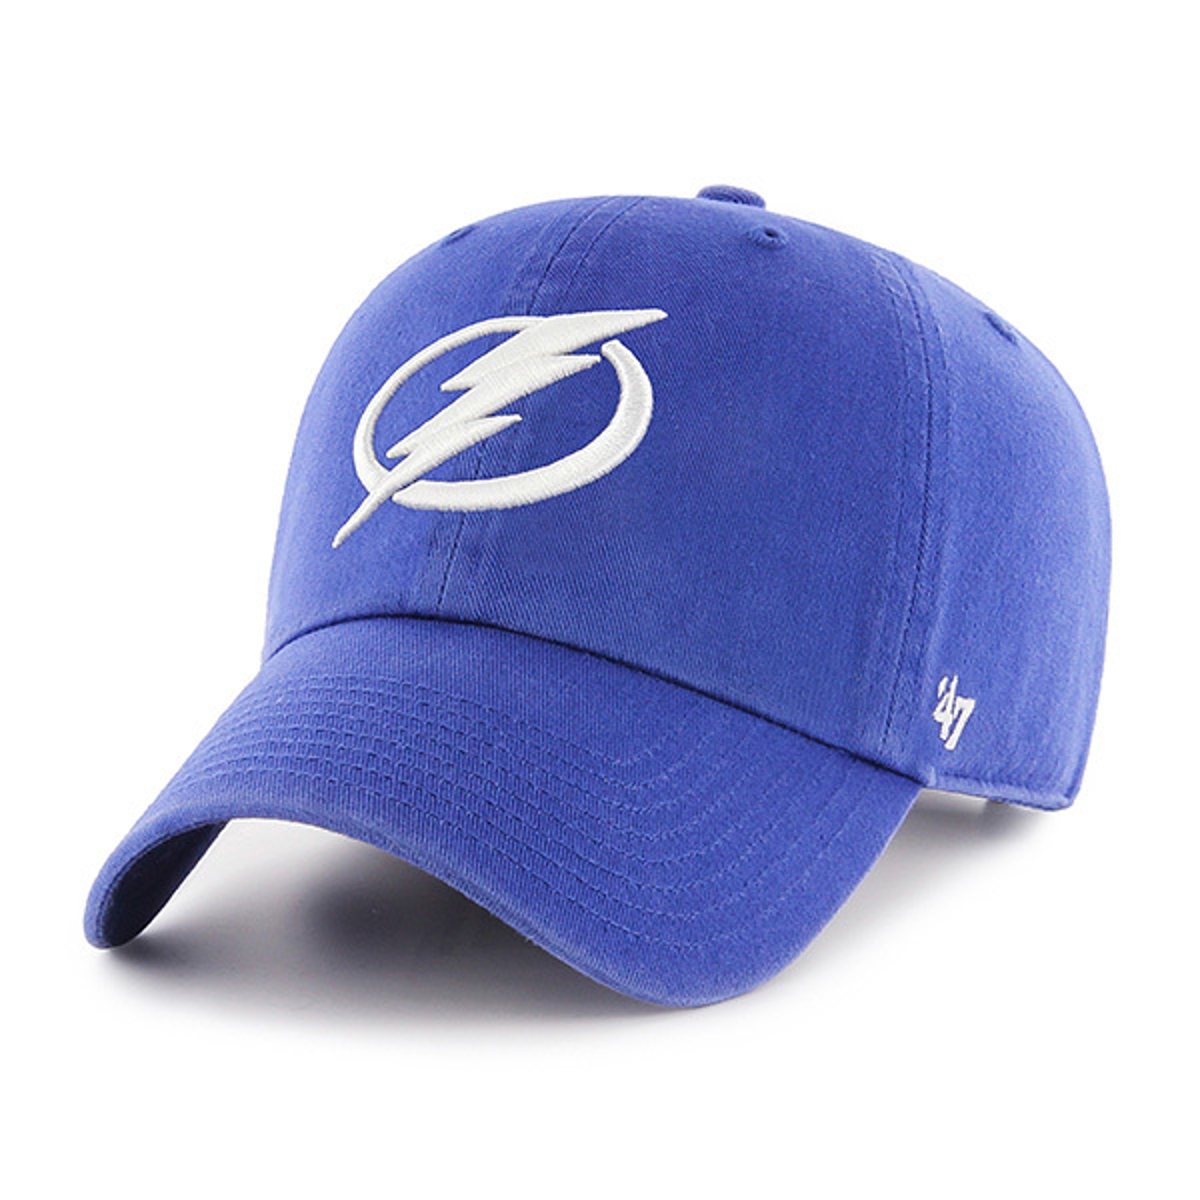 Tampa Bay Lightning '47 Royal Flex Fit Franchise Hat